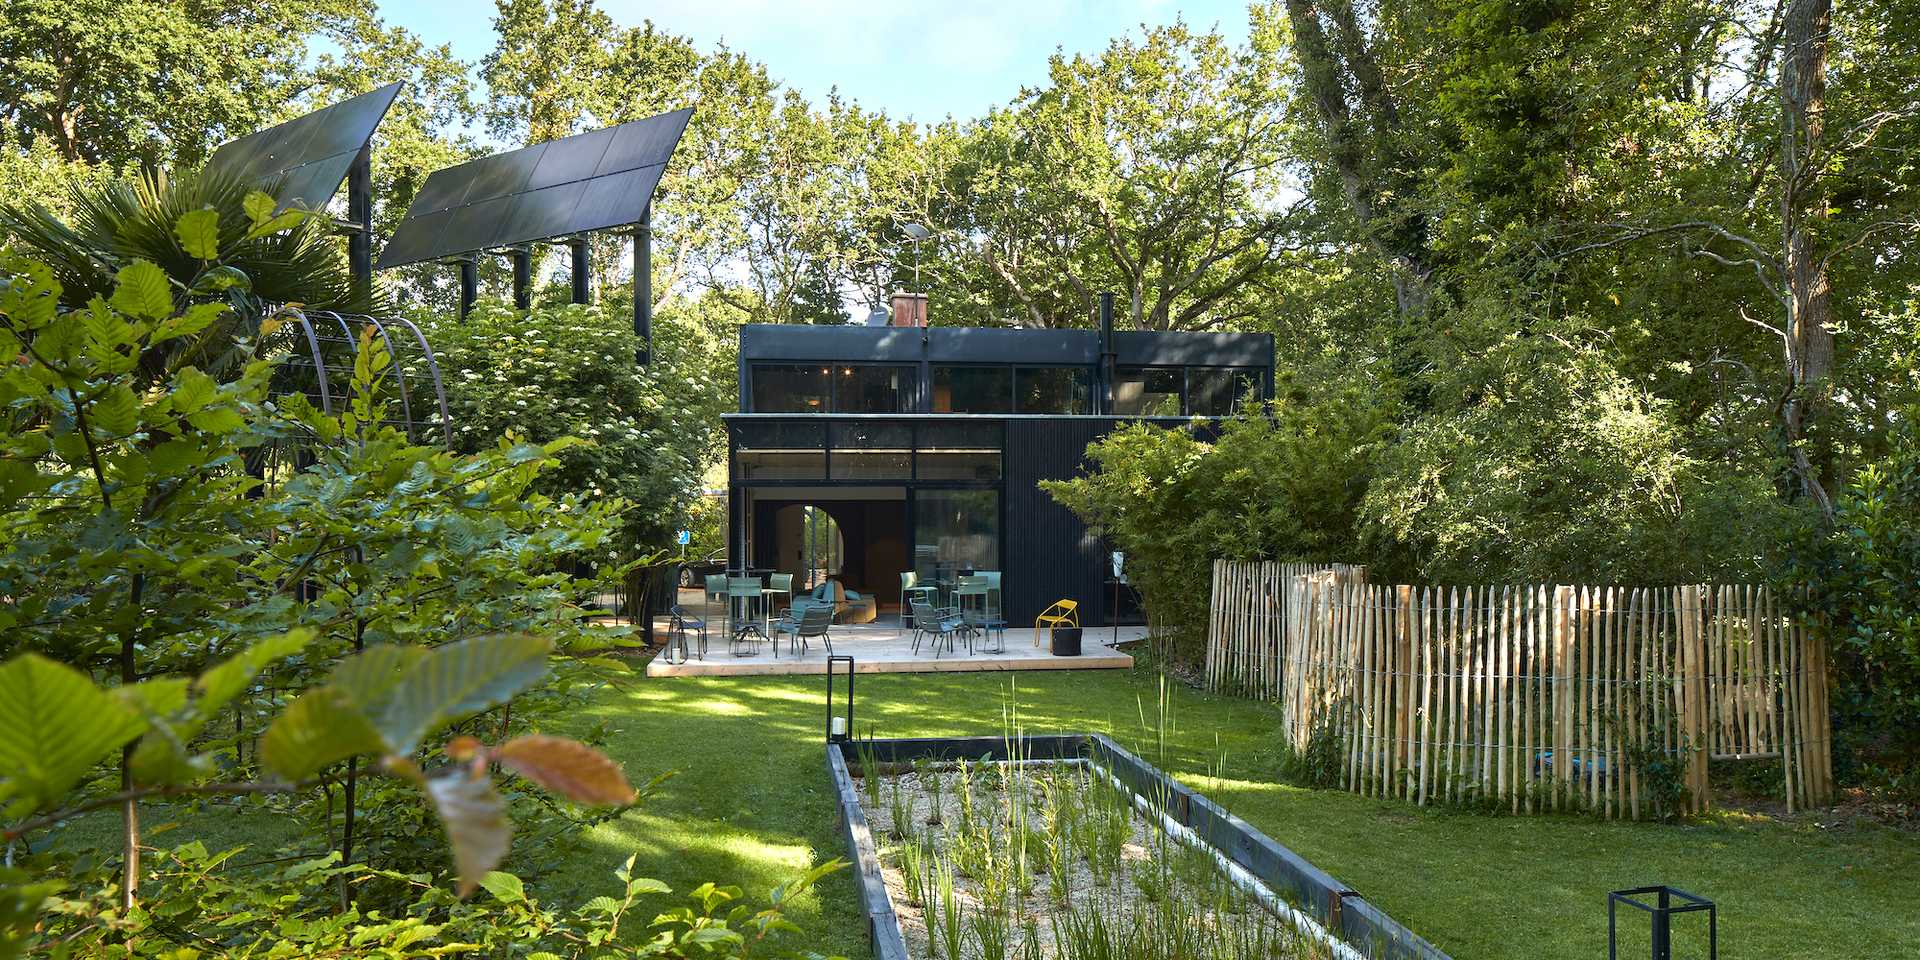 Aménagement paysager d'une maison d'architecte par un paysagiste basé dans l'agglomération de Nantes